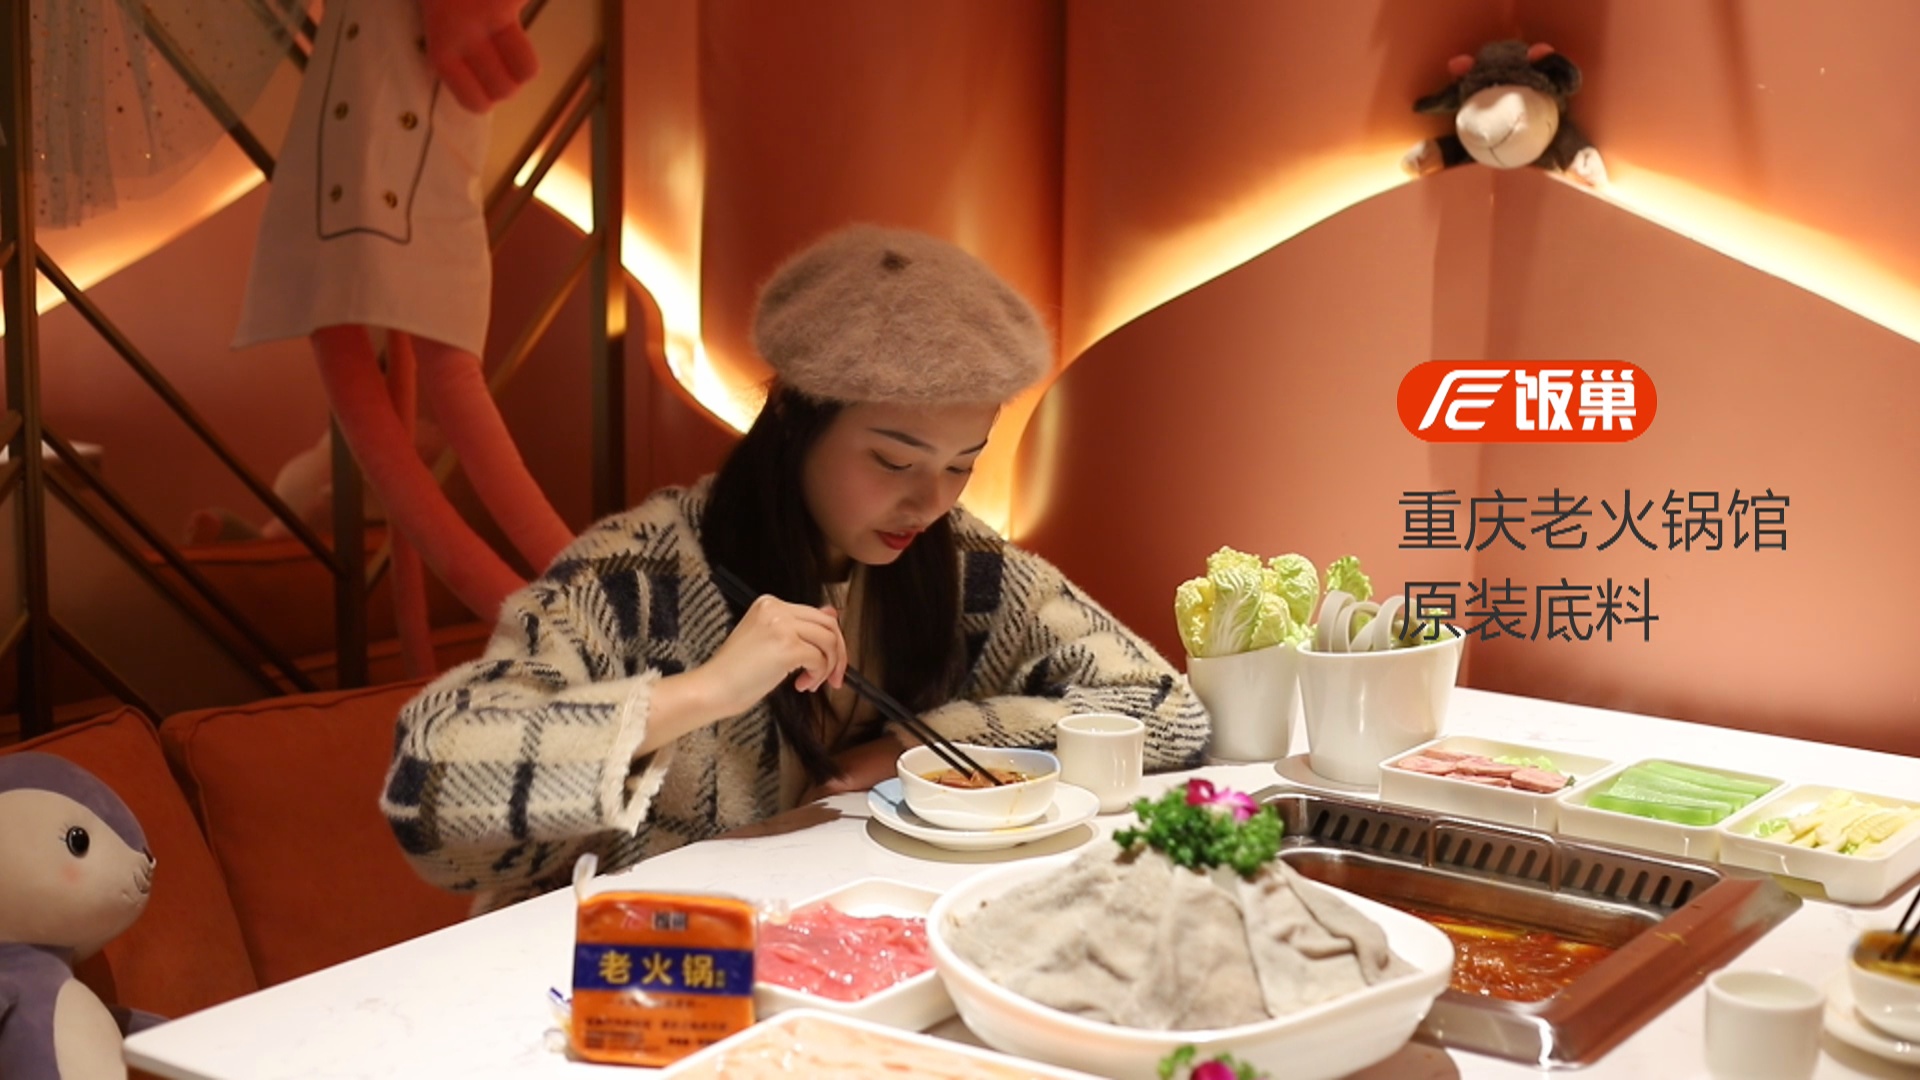 天猫主图视频拍摄制作重庆火锅底料方块食品拍摄视频制作案例-图片2